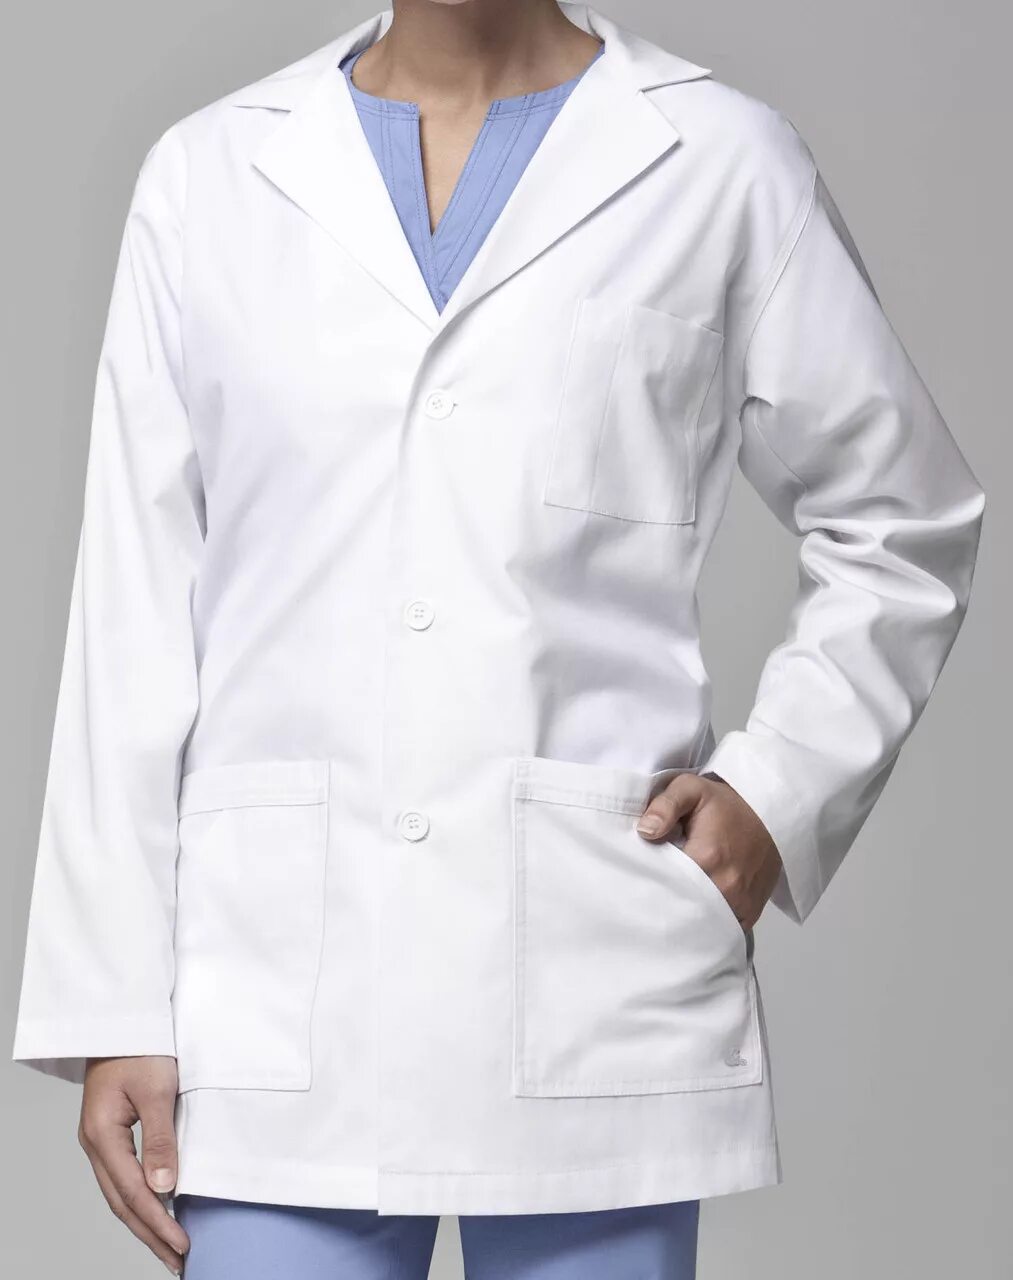 Медицинский халат. Халат медицина. Доктор в халате. Медицинский белый халат мужской для фотошопа. Купленных халат аптека